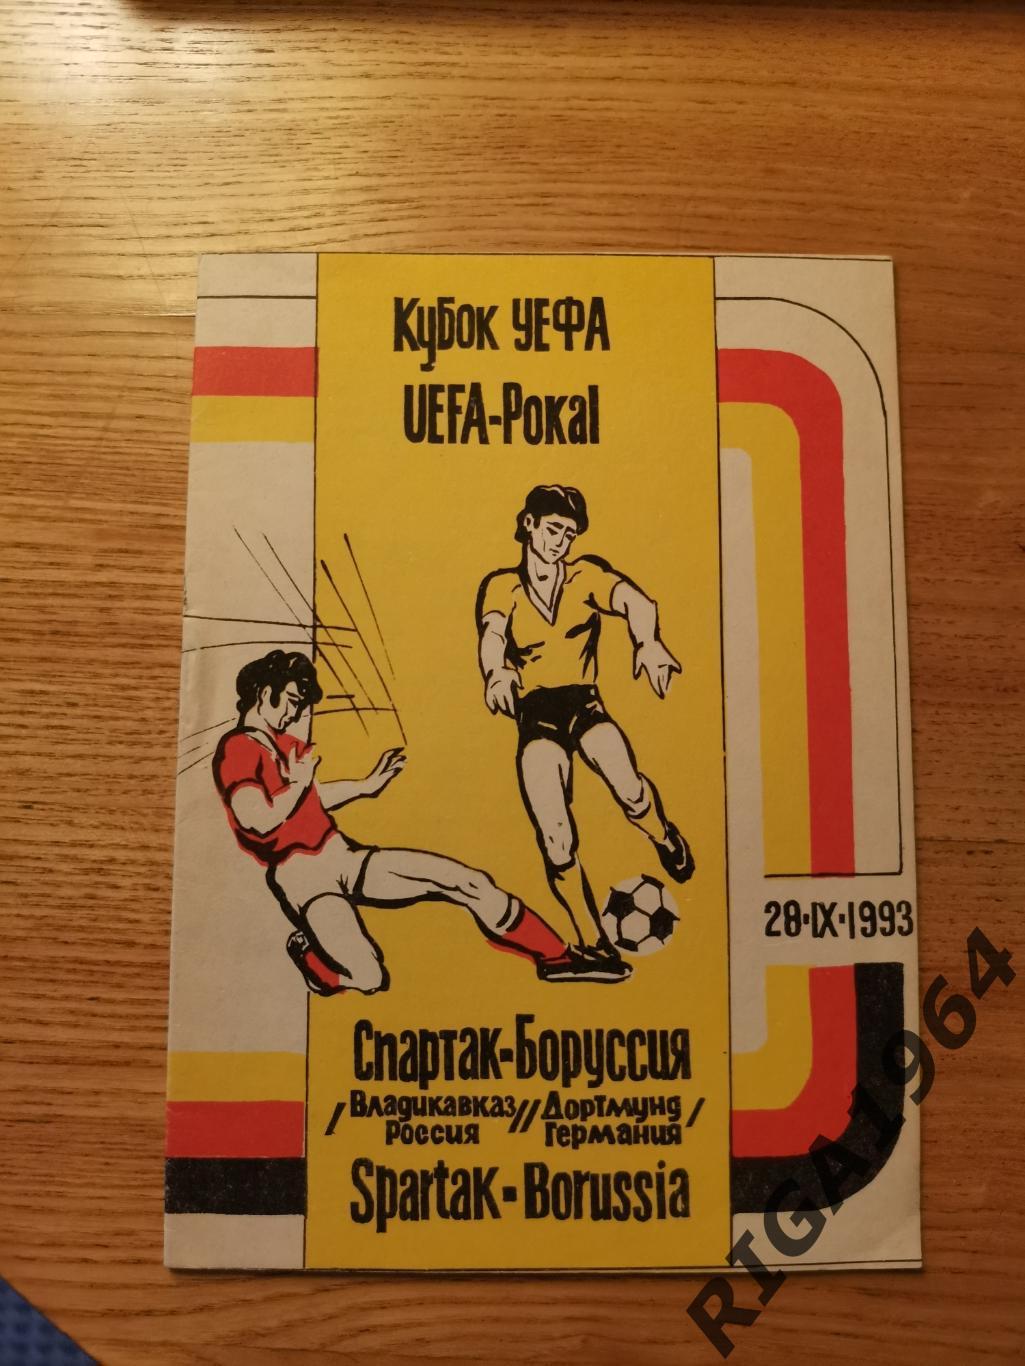 Кубок УЕФА 1993/94 Спартак Владикавказ-Боруссия Дортмунд, Германия